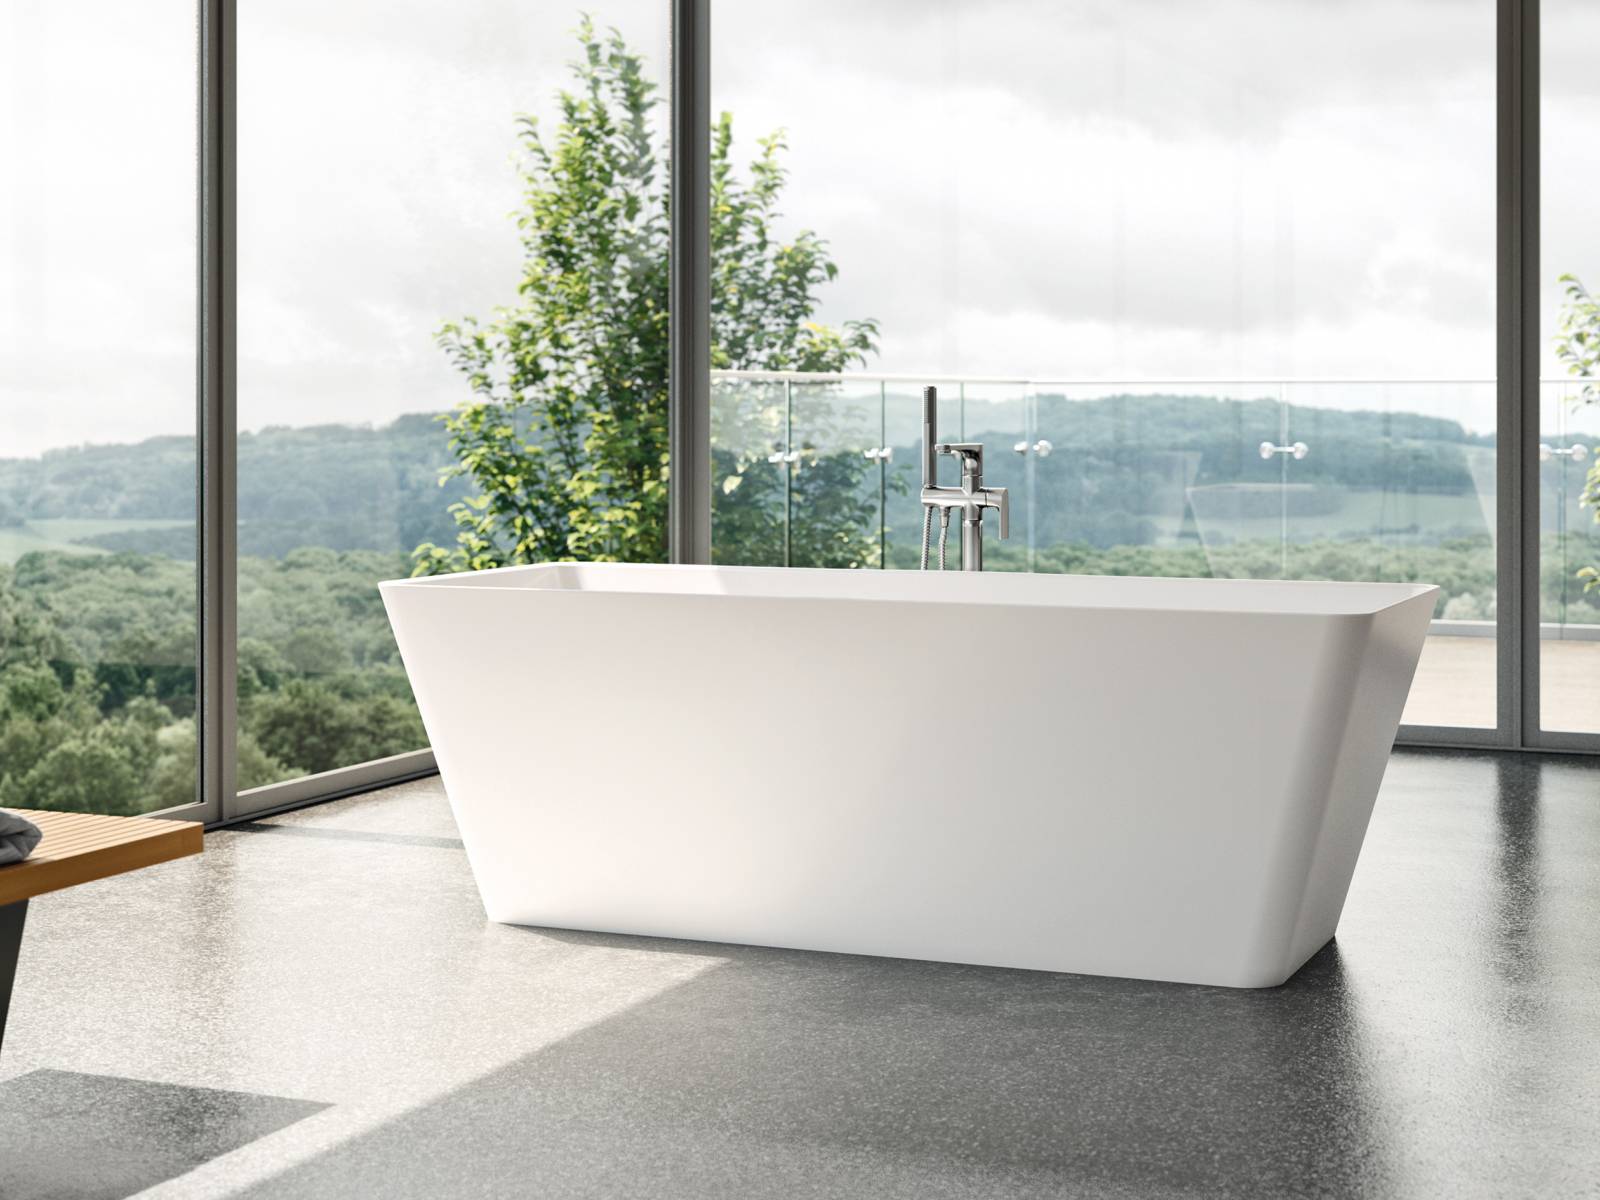 Die freistehende Badewanne «Formia» wird aus dem innovativen Material Bestone hergestellt und erfüllt mit ihrer rechteckigen Form alle Ansprüche an geradliniges Design und Komfort. Duscholux.